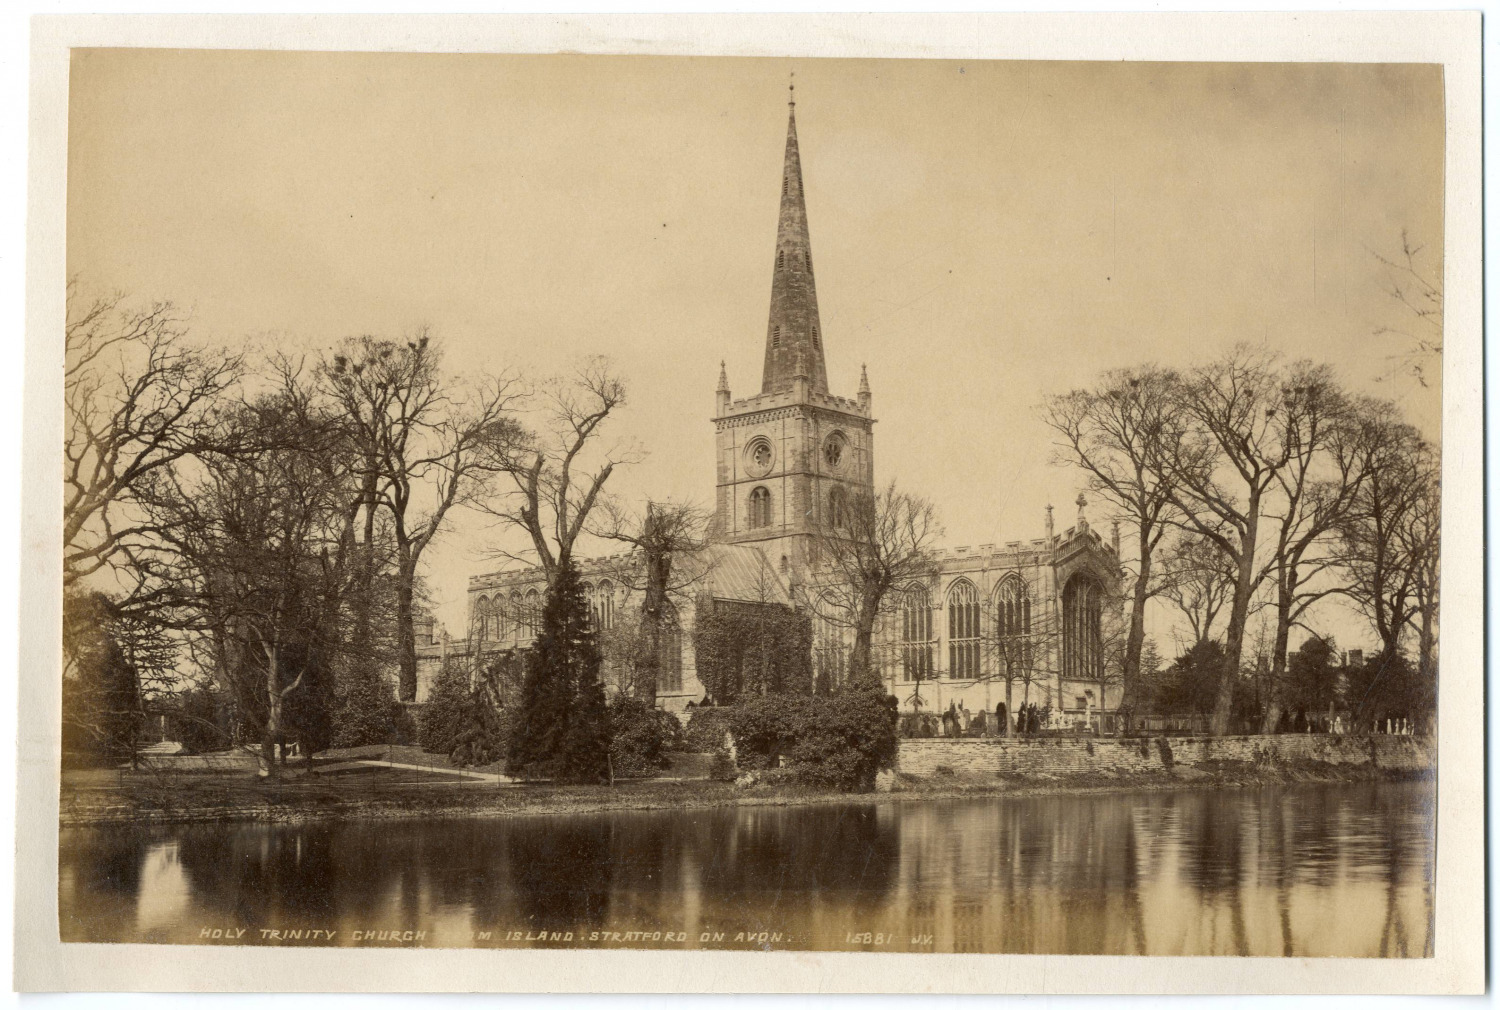 England, Holy Trinity church from island Stratford on Avon Vintage albumen print